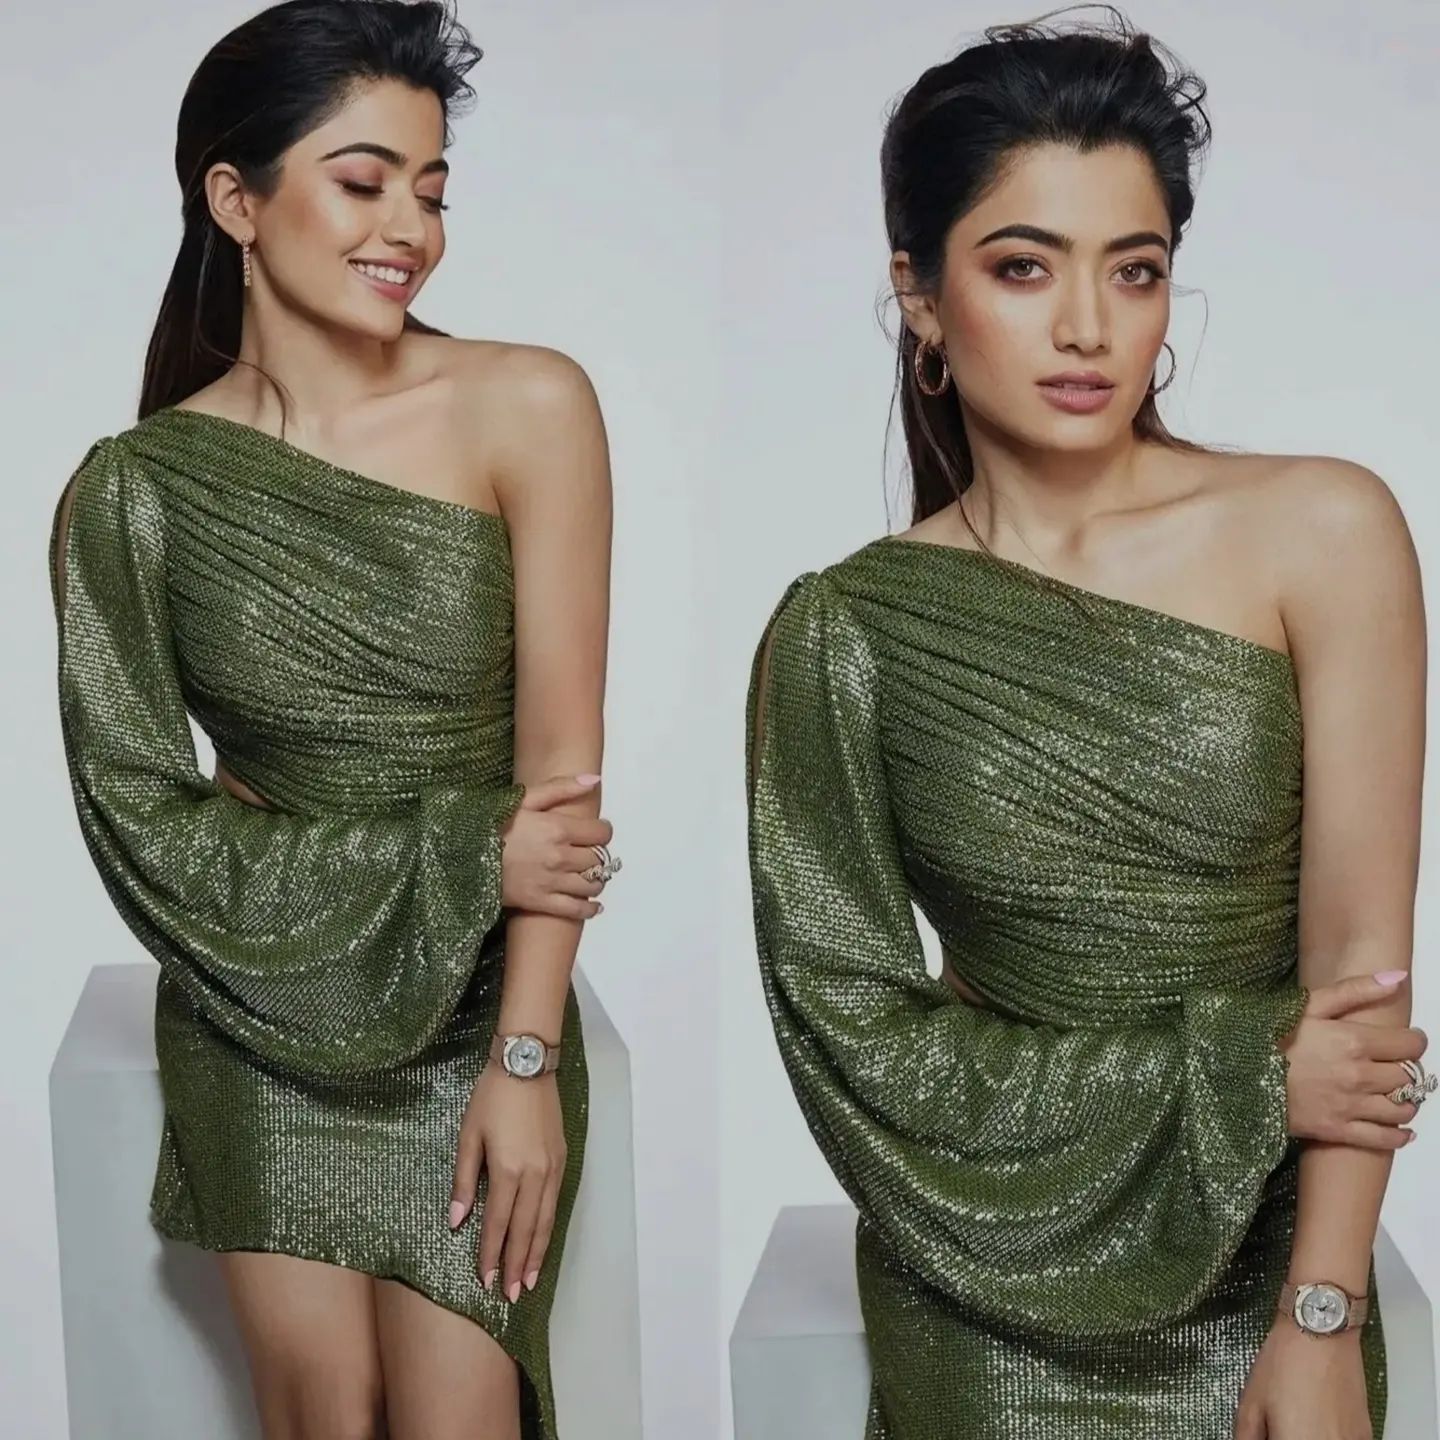 Rashmika mandanna hot latest photoshoot in green dress shared on internet